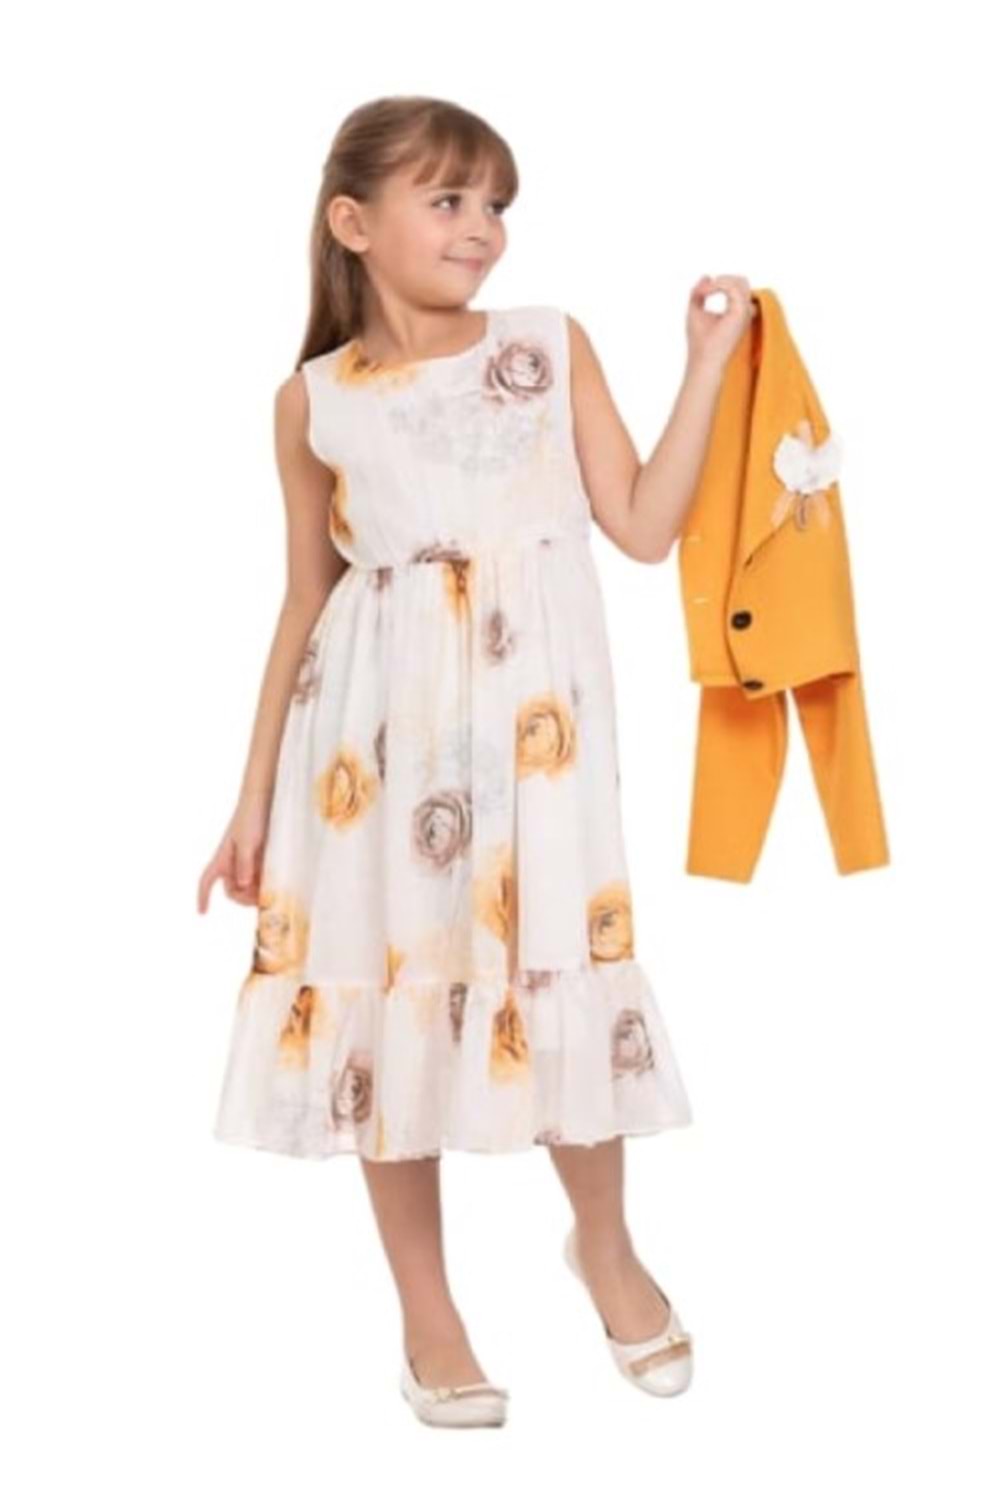 Gülücük Kids 00659 Kız Çocuk Şifon Desenli Bolero Elbise - Sarı - ST00659-Sarı-10 YAŞ